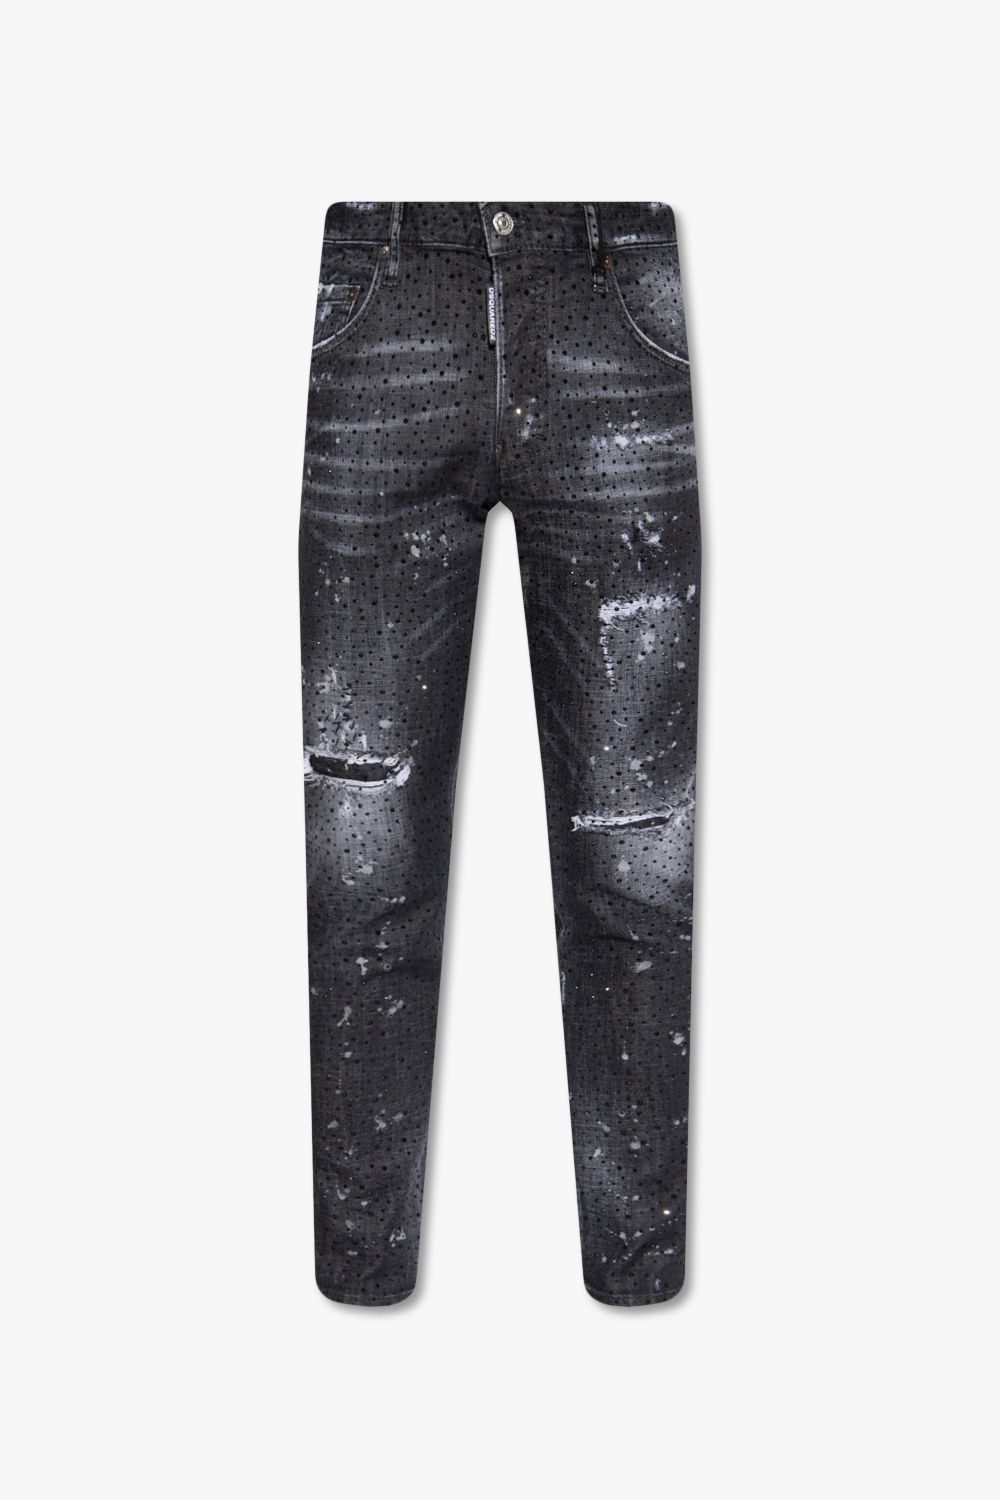 Black 'Skater' jeans Dsquared2 - Dress 01AD240Y 1063U 